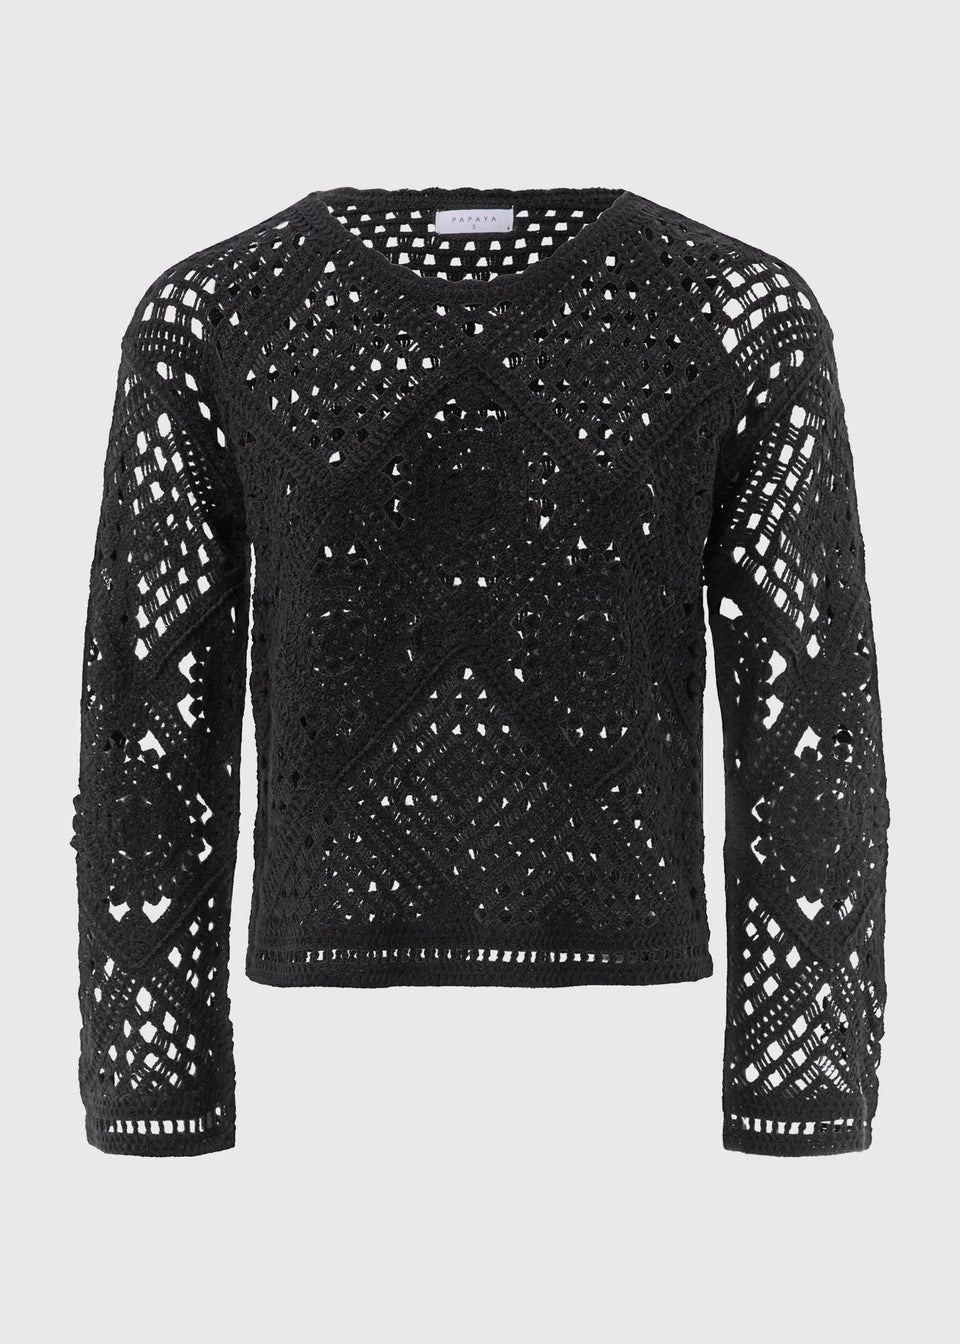 Black Crochet Top